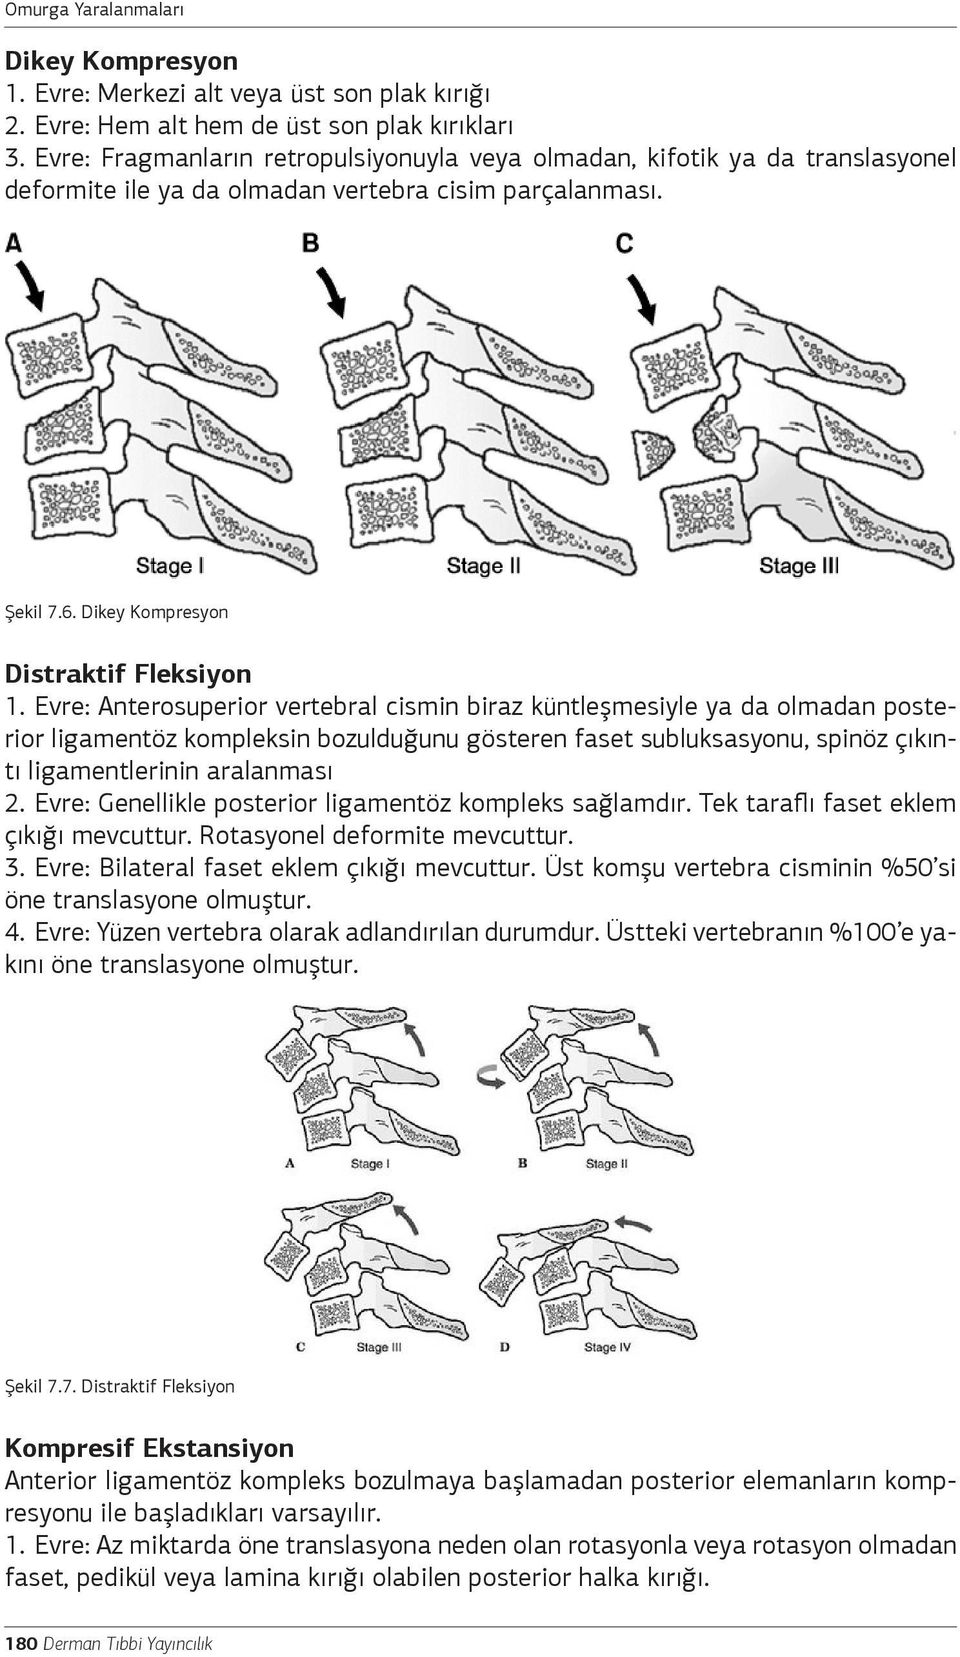 Evre: Anterosuperior vertebral cismin biraz küntleşmesiyle ya da olmadan posterior ligamentöz kompleksin bozulduğunu gösteren faset subluksasyonu, spinöz çıkıntı ligamentlerinin aralanması 2.